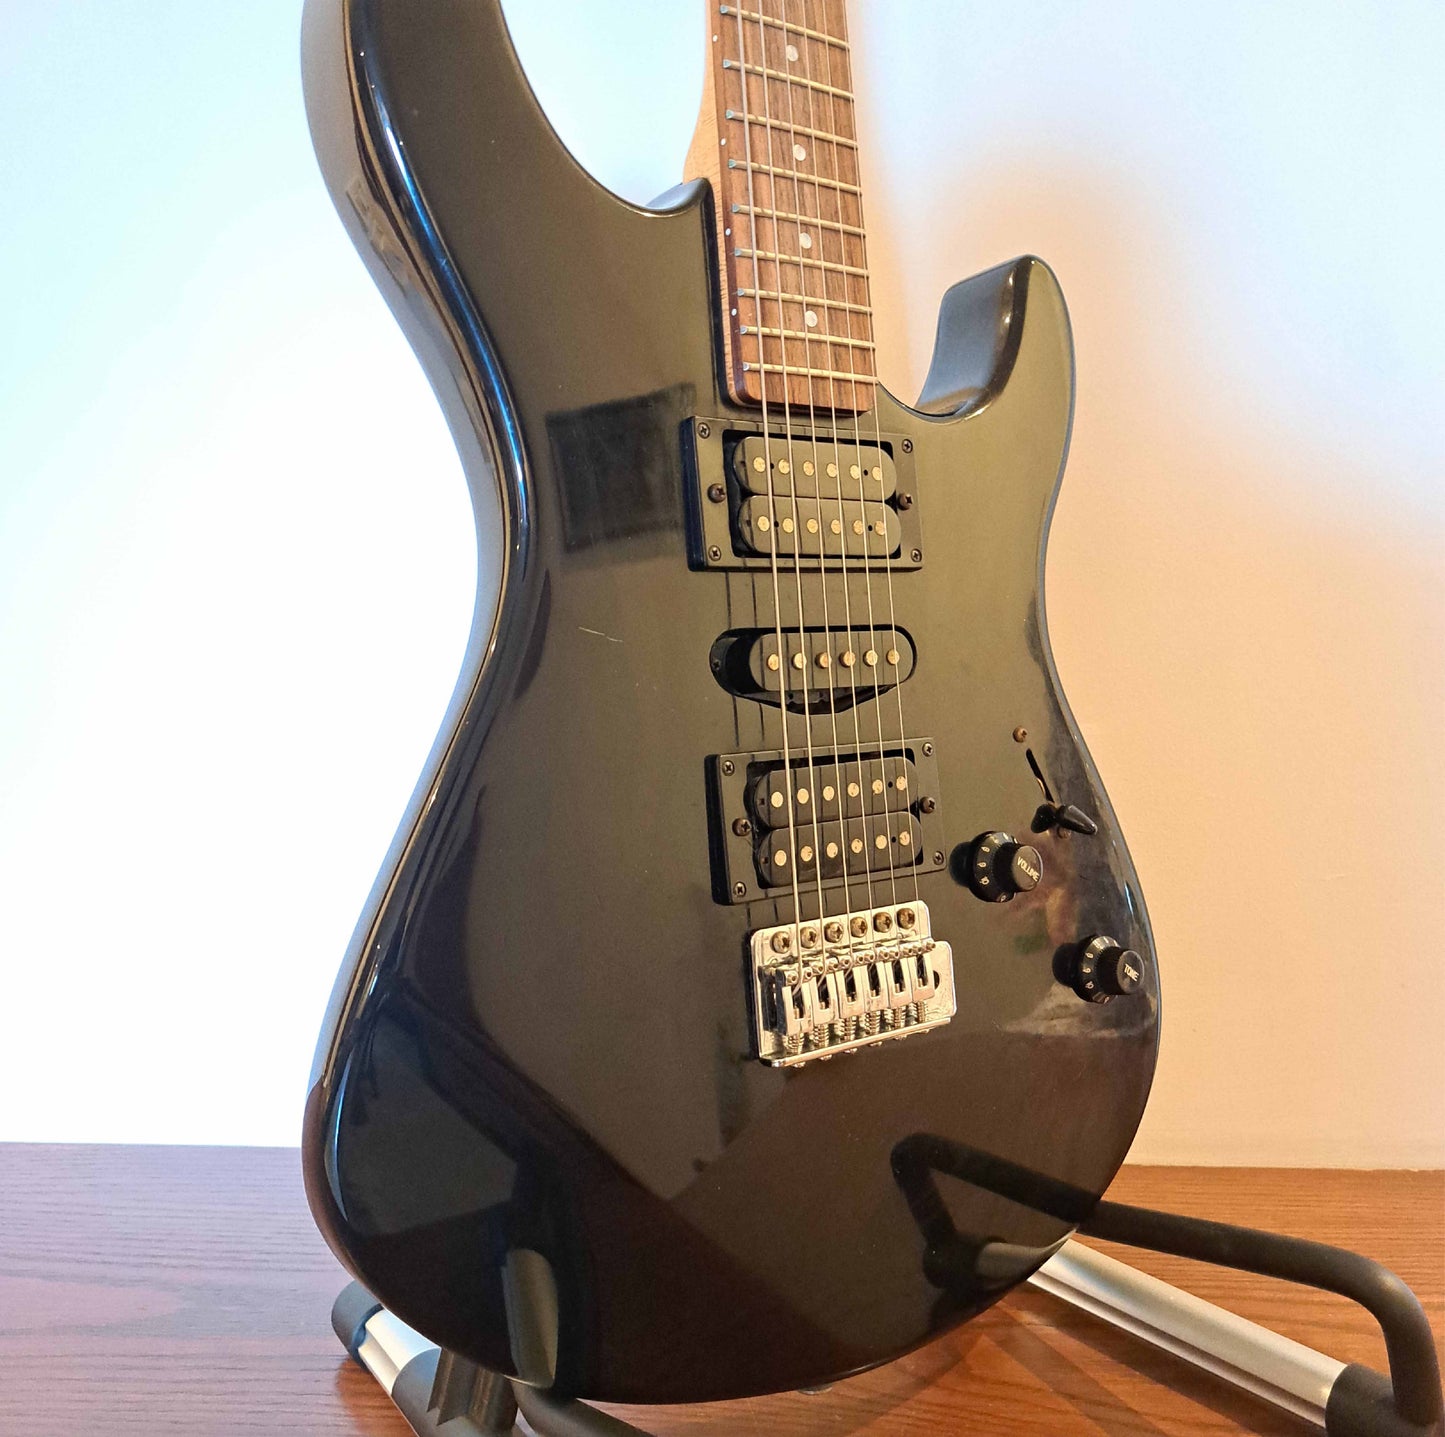 Yamaha ERG121 Electric Guitar